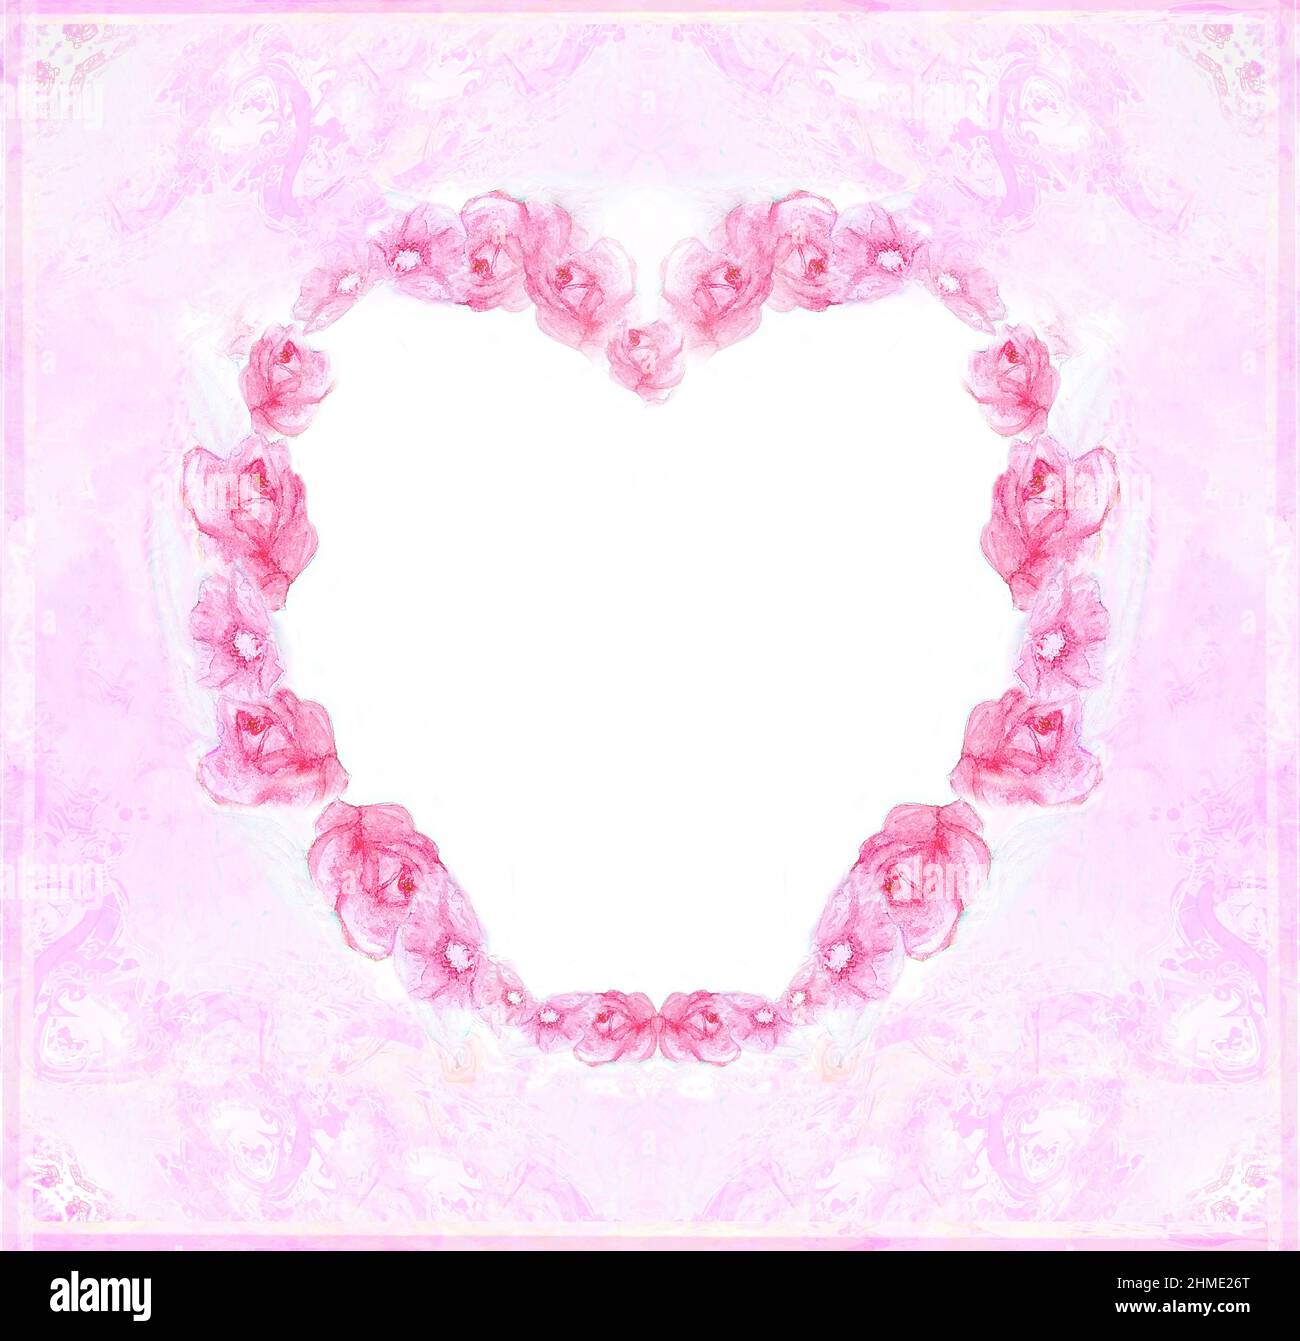 carte artistique pour la saint-valentin avec cadre floral en forme de coeur Banque D'Images